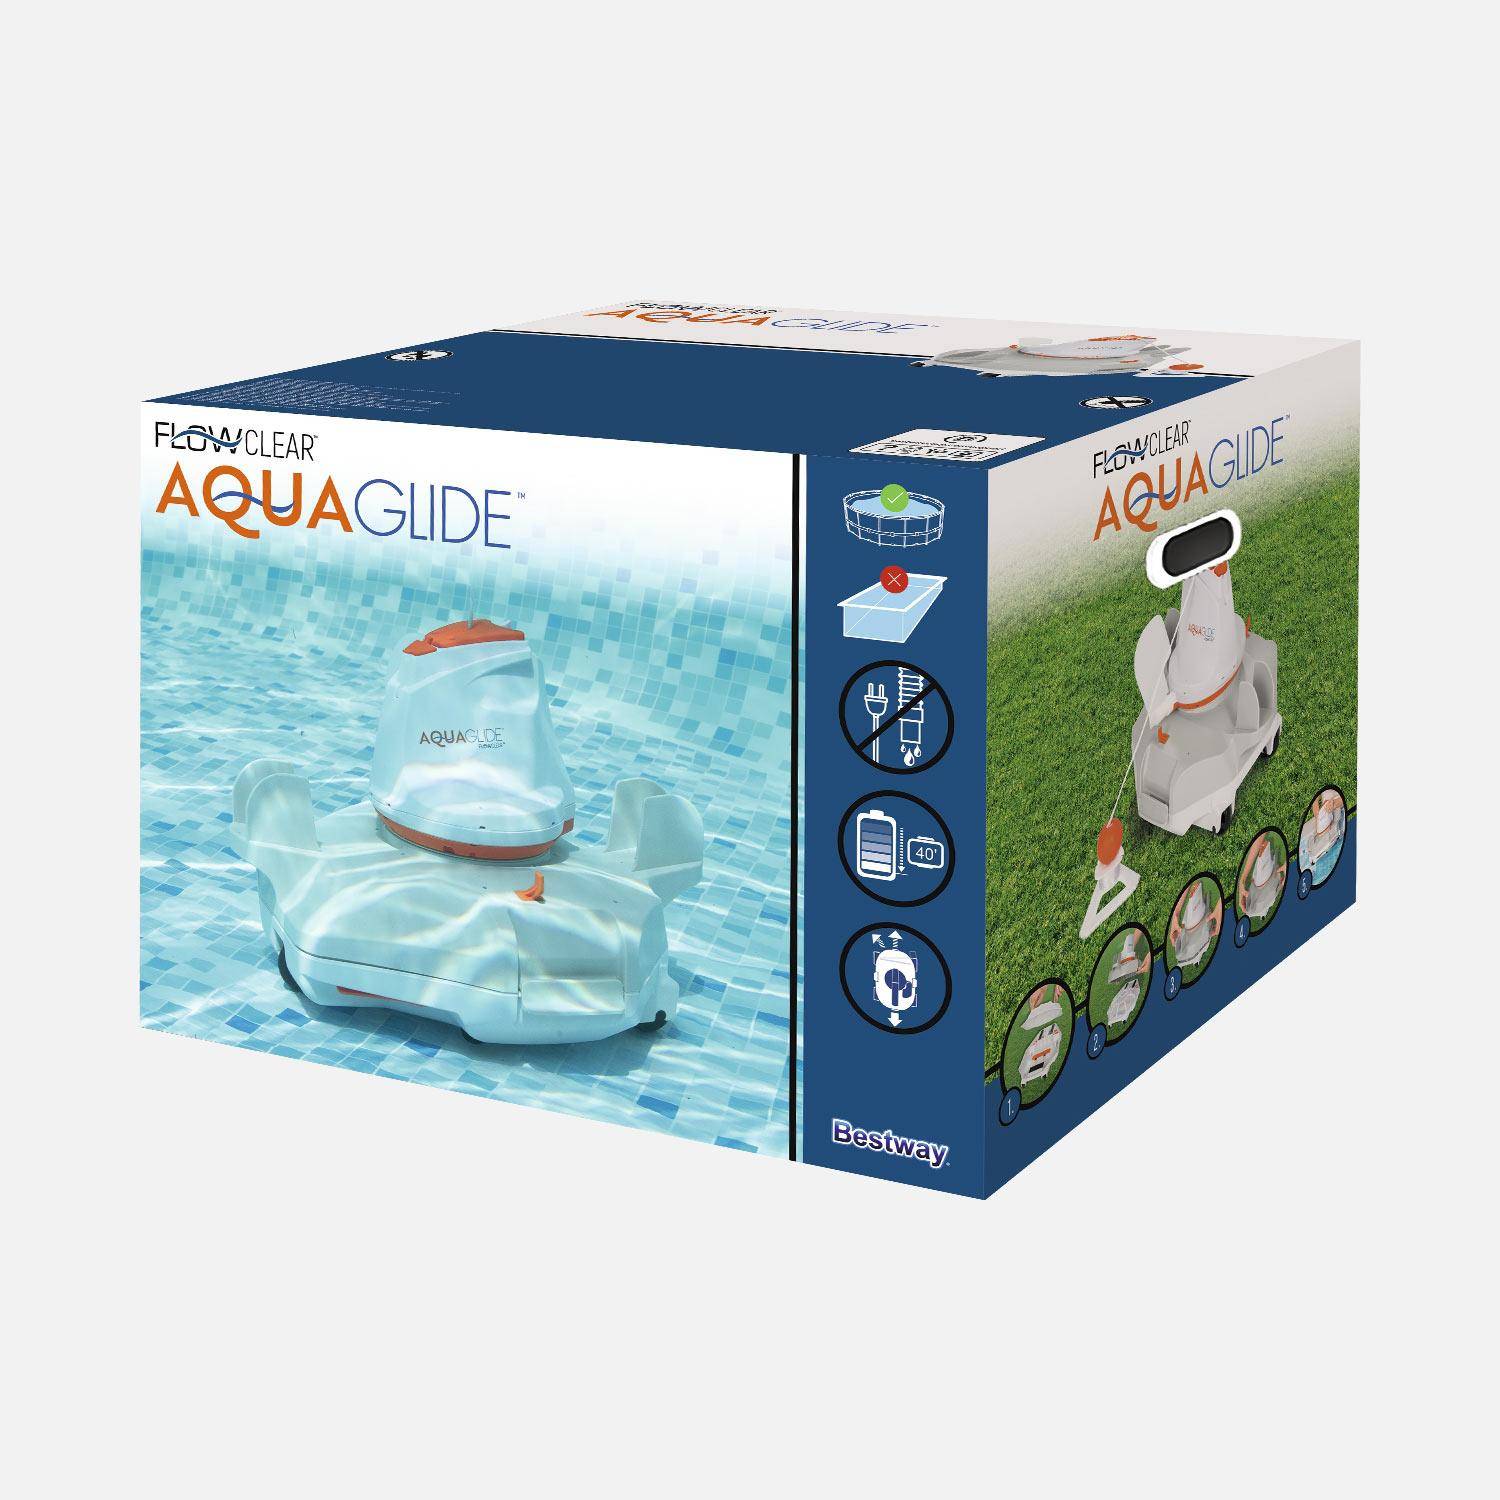 Robot aspirador Flowclear aquaglide para piscinas de fondo plano de hasta 20m².,sweeek,Photo6